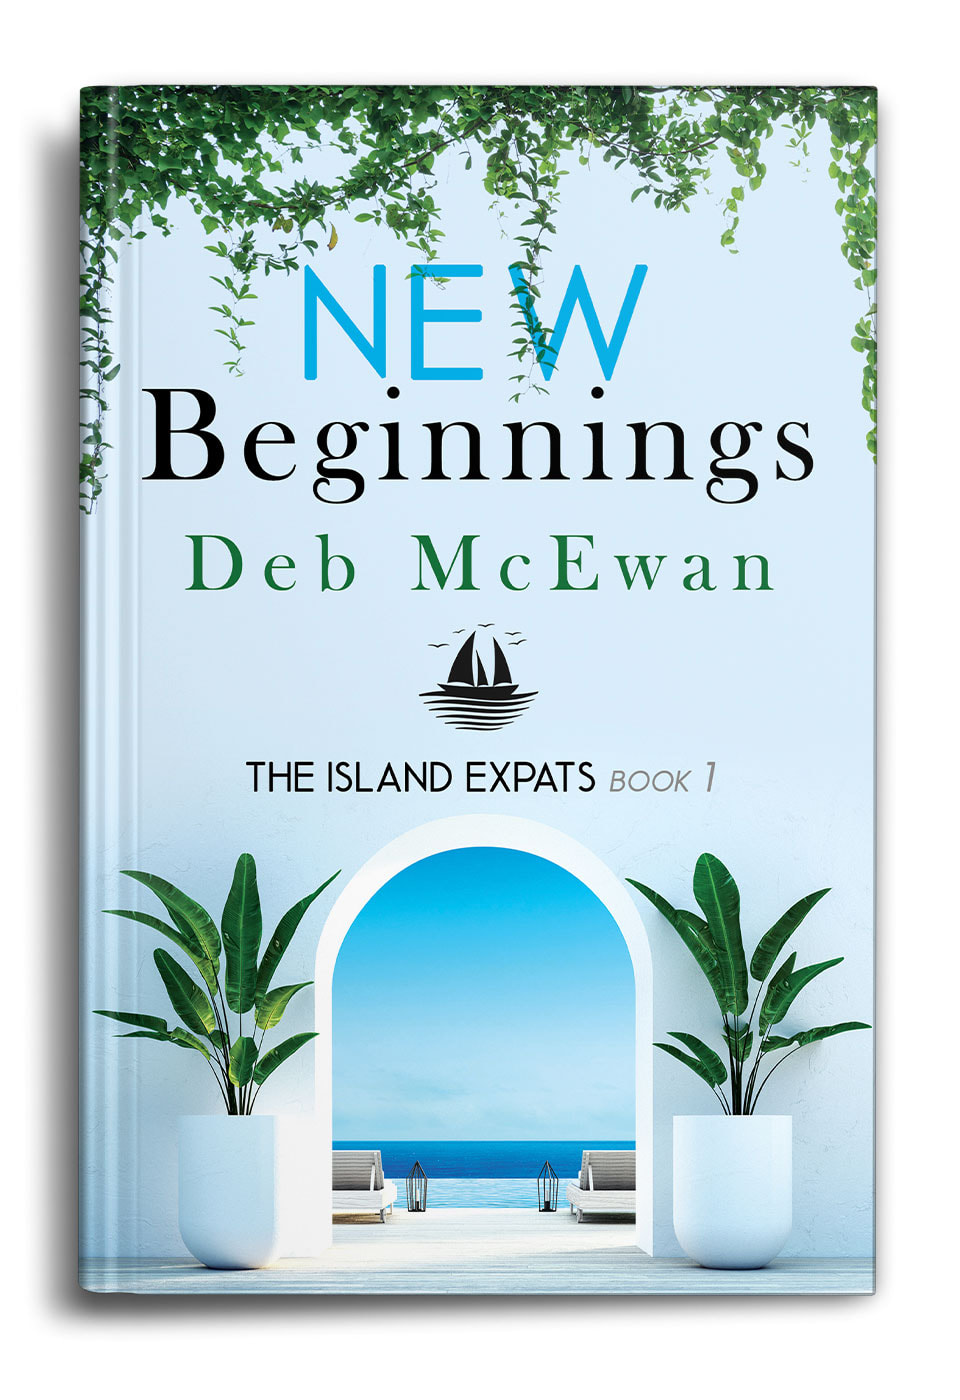 New Beginnings by Deb McEwan